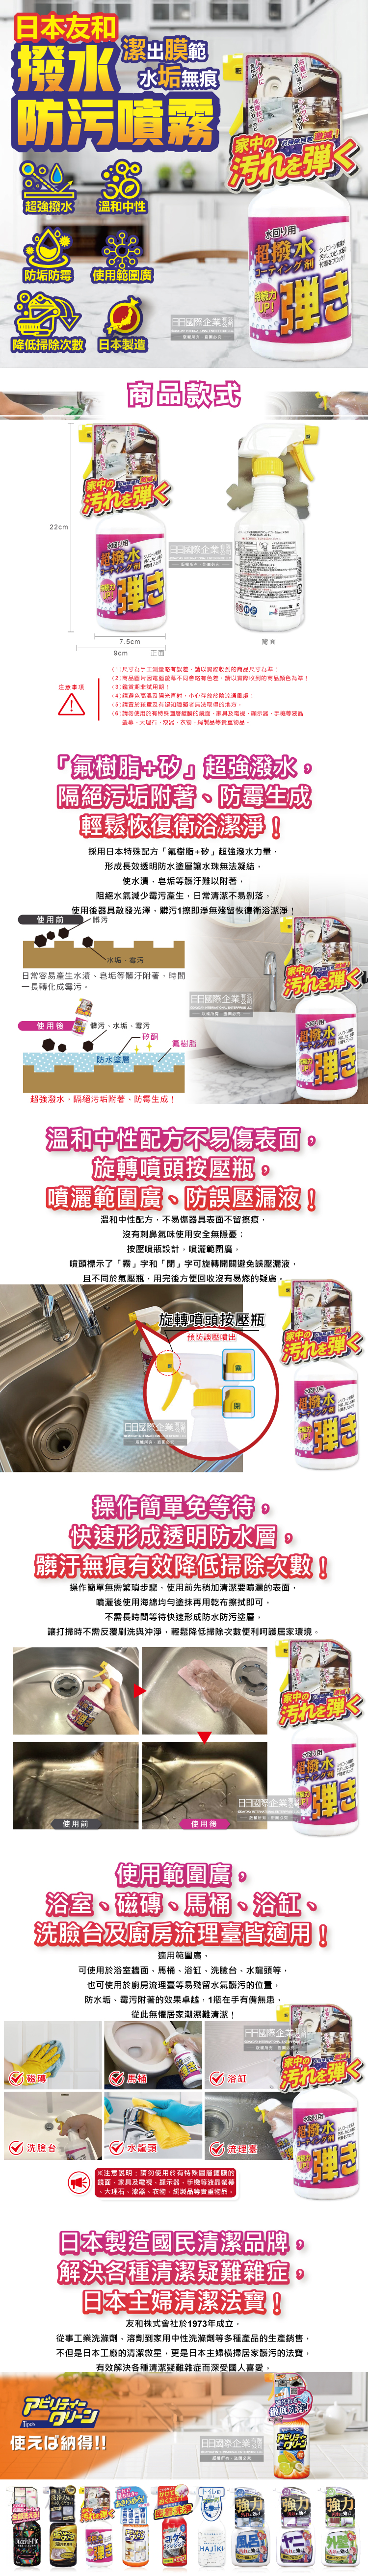 (清潔-衛浴)日本友和-Tipo's超潑水防水防污噴霧清潔劑500ml瓶裝介紹圖